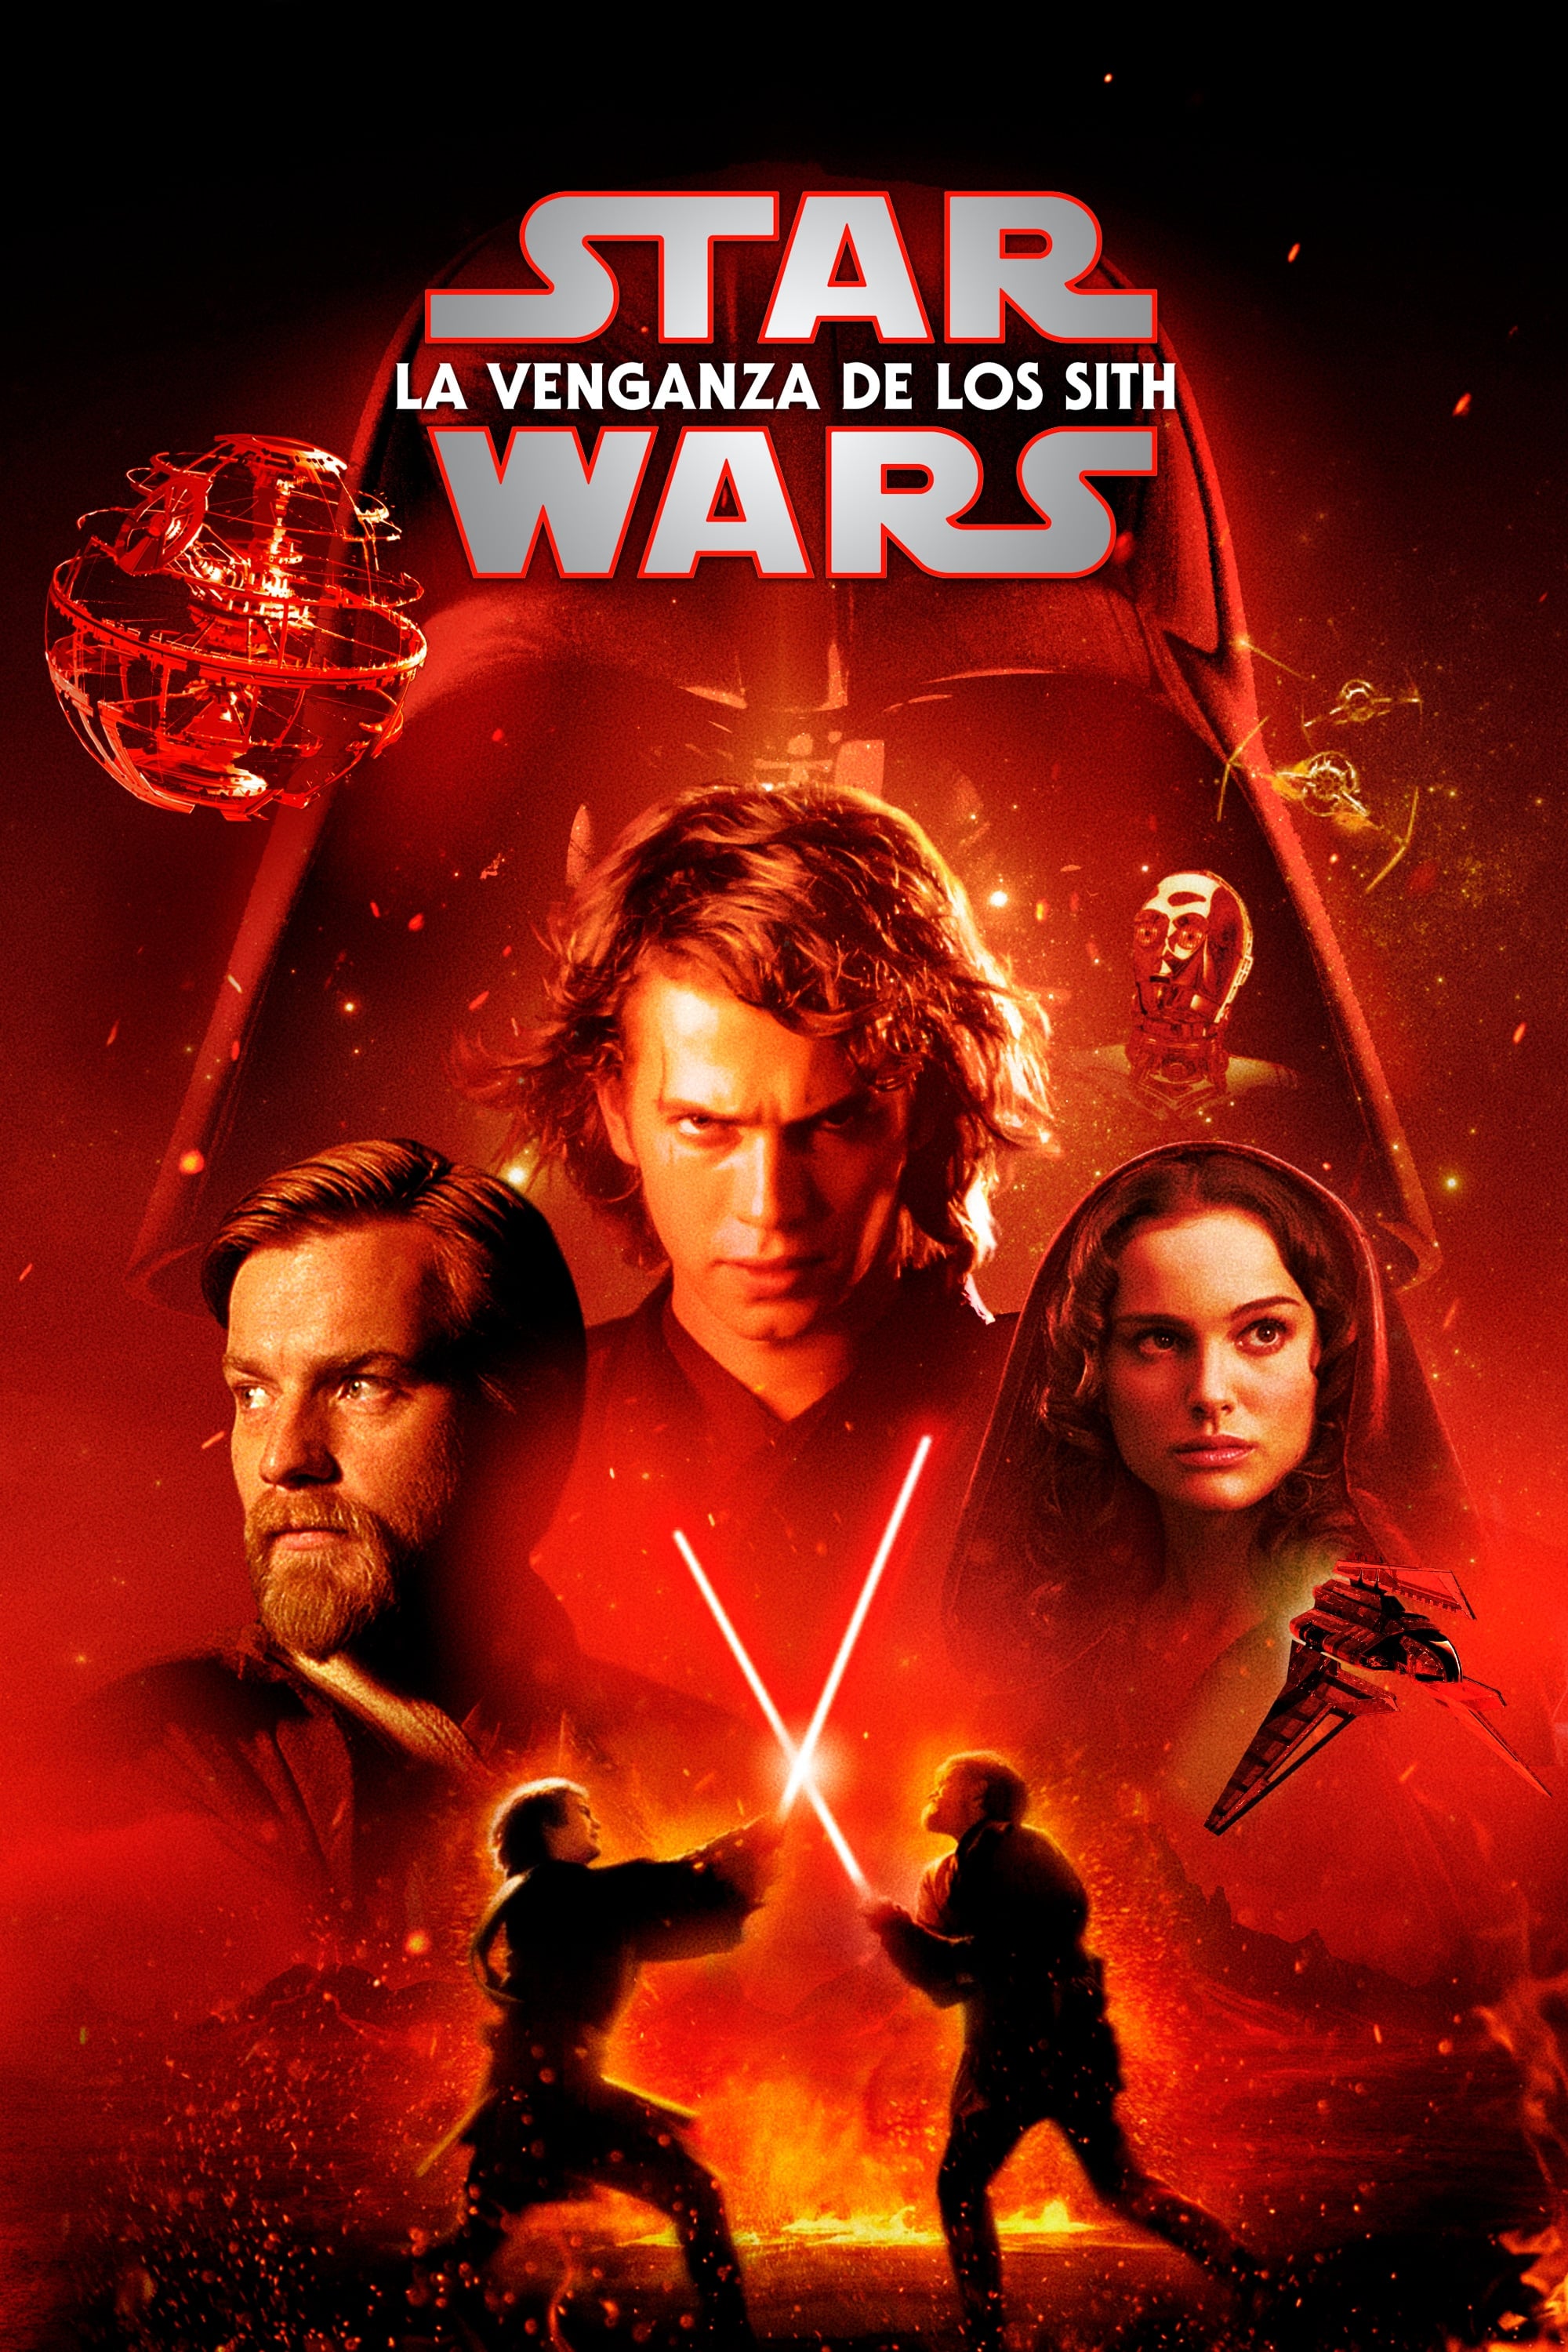 Star Wars: Episodio III: La venganza de los Sith - 2005